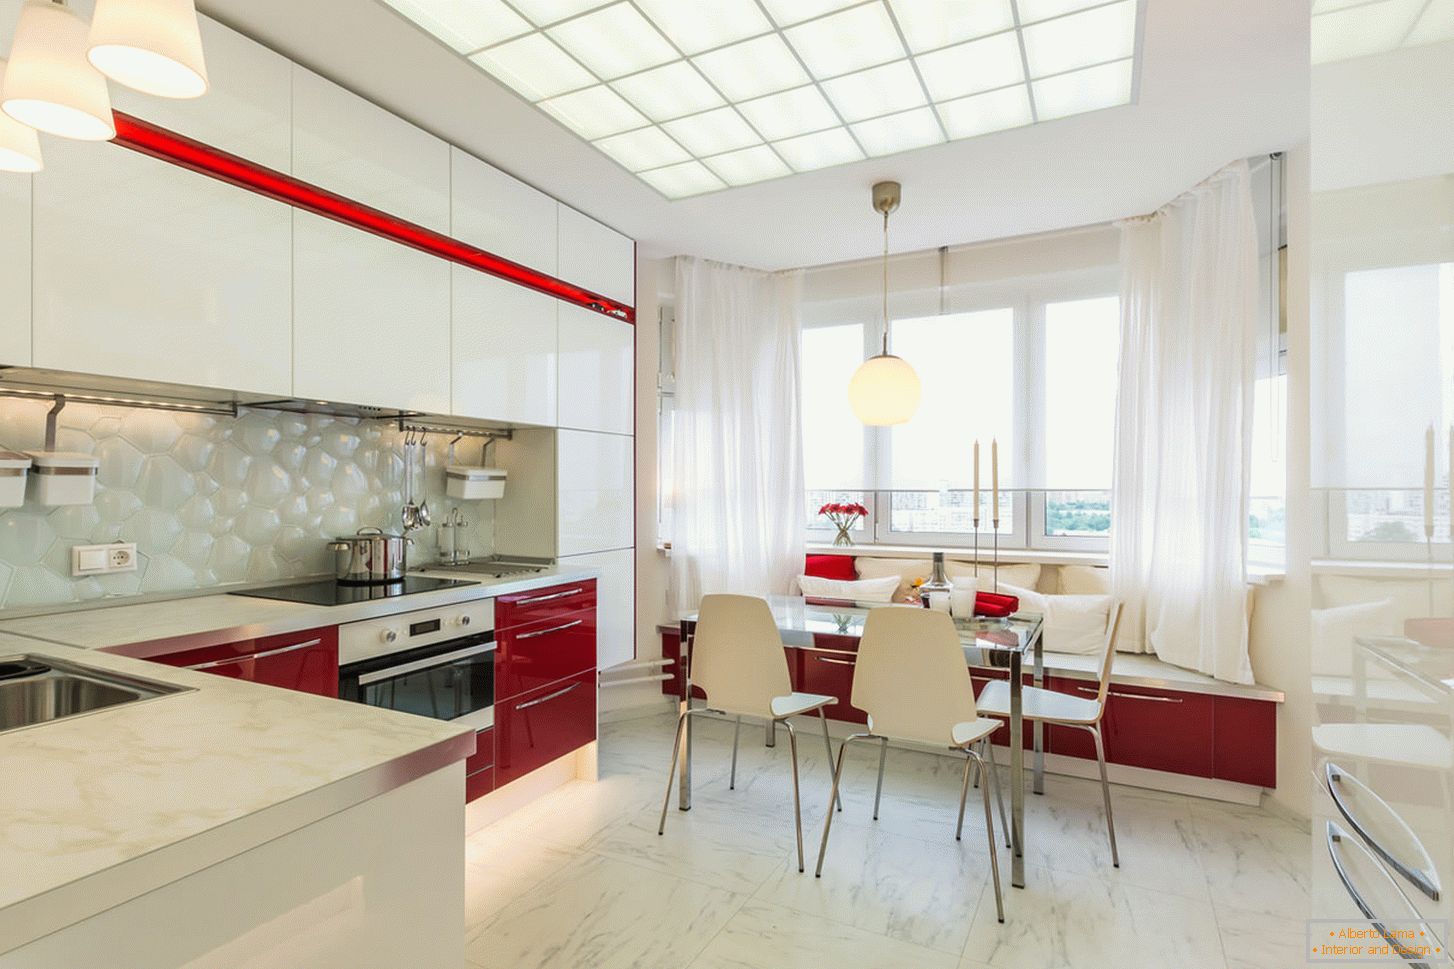 Cozinha interior chique em cores brancas e vermelhas